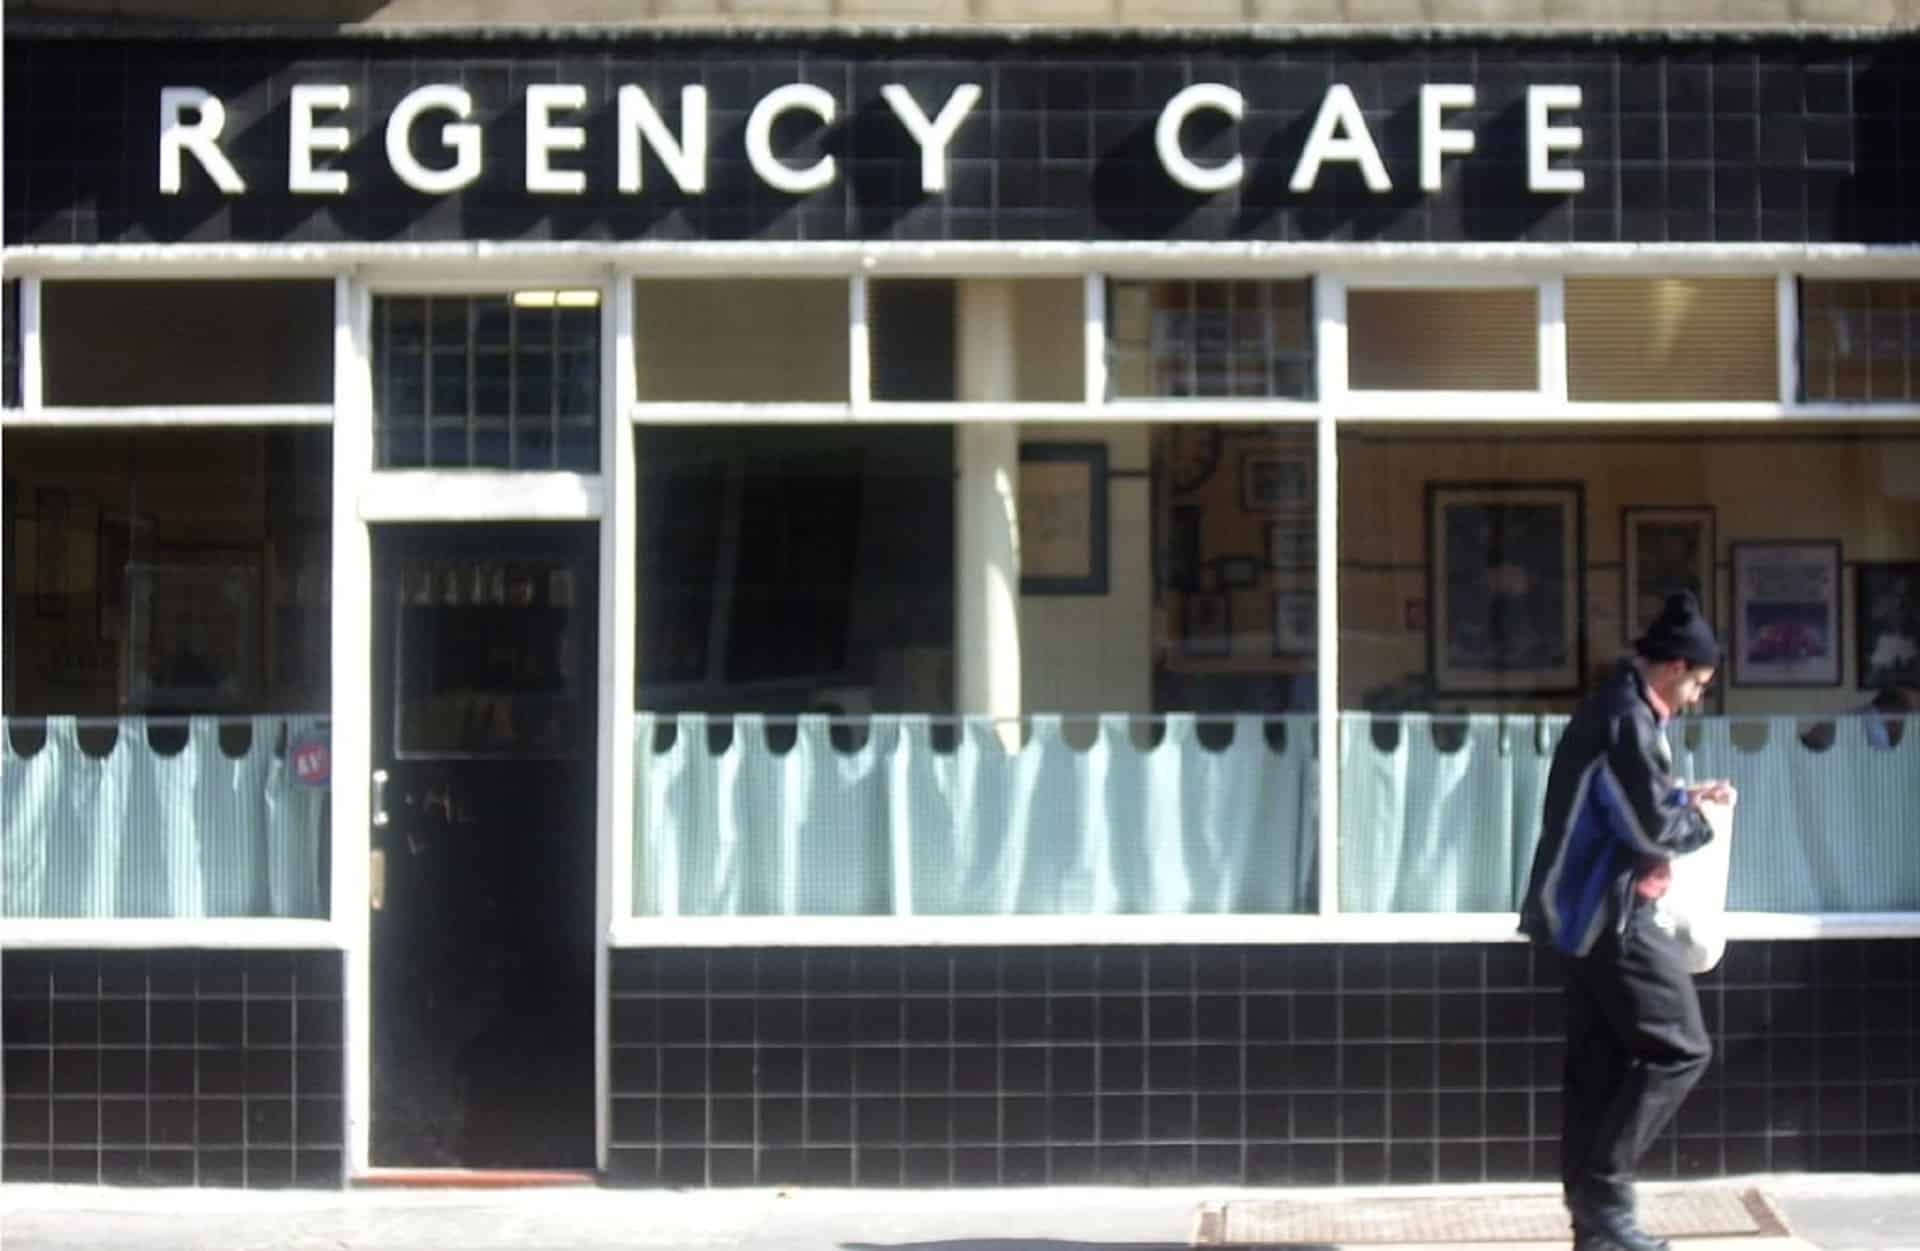 Regency Cafe in UK